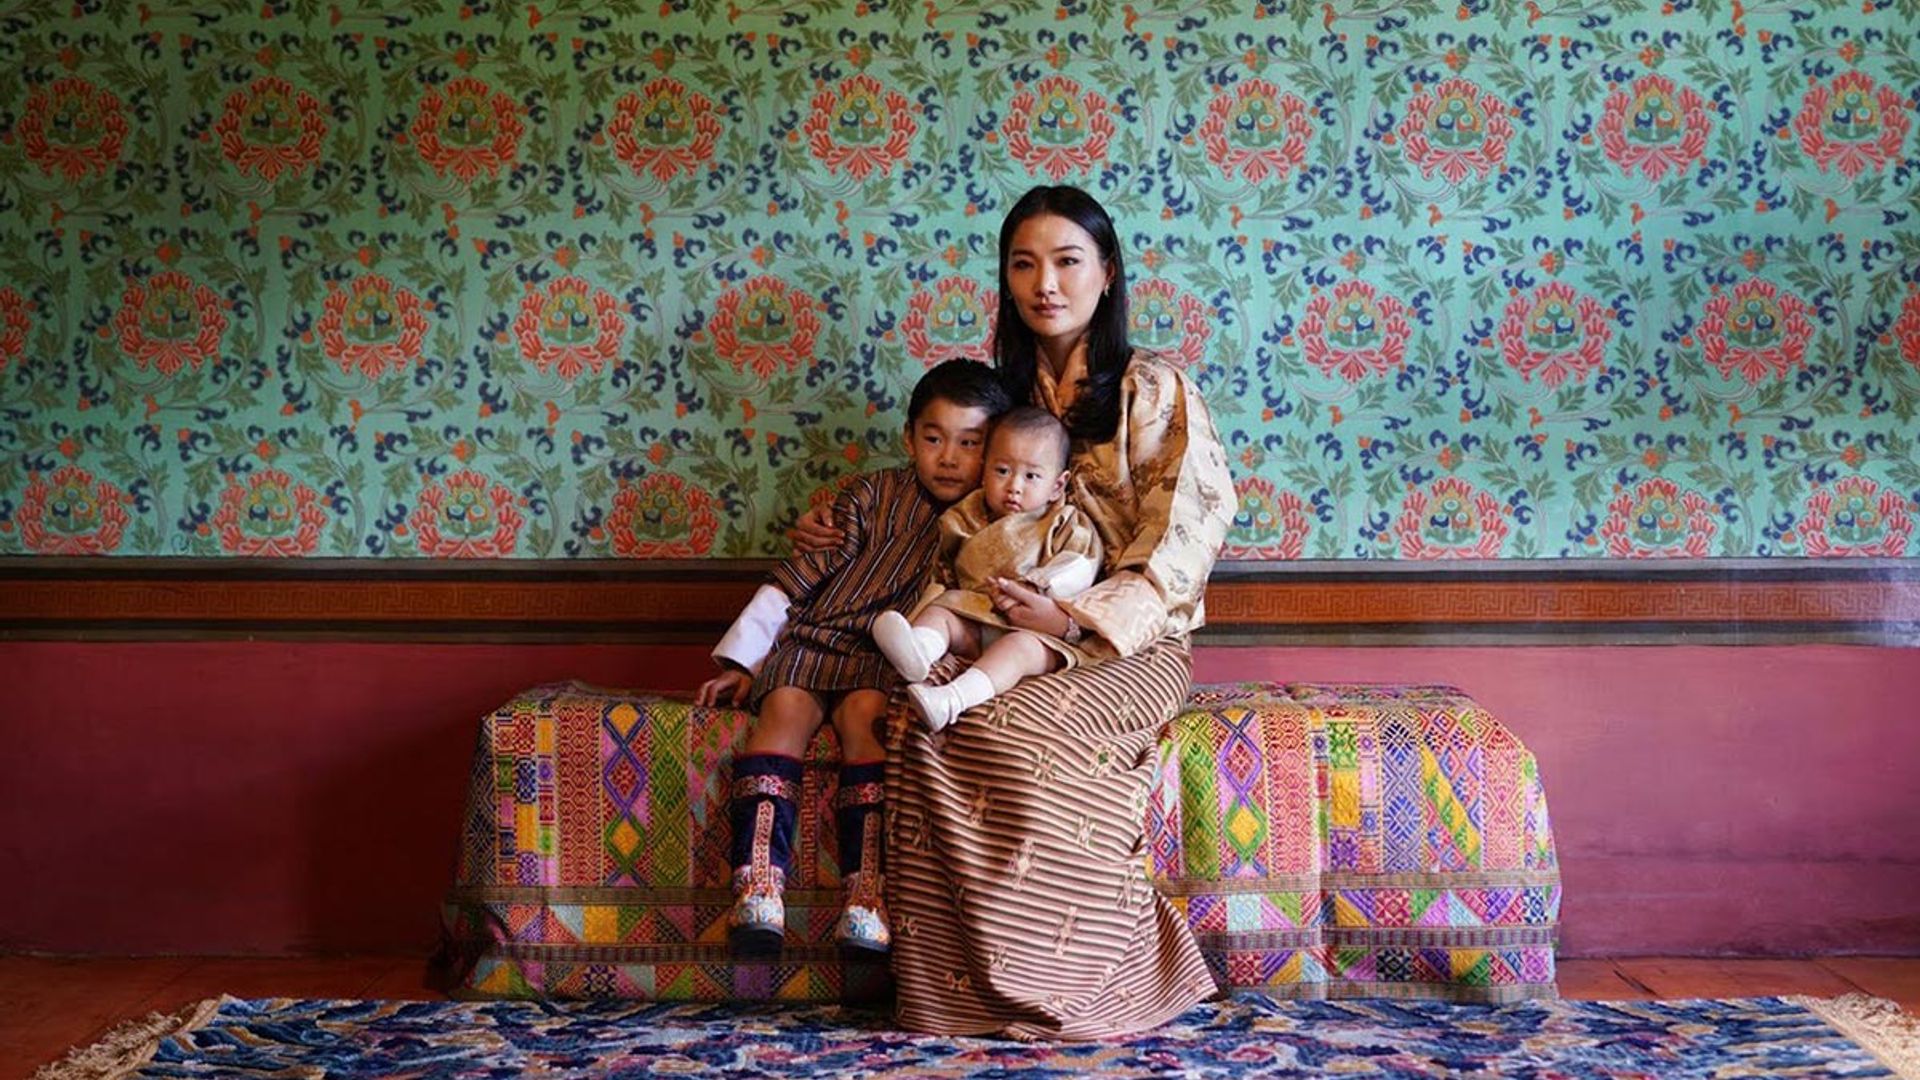 bhutan royals